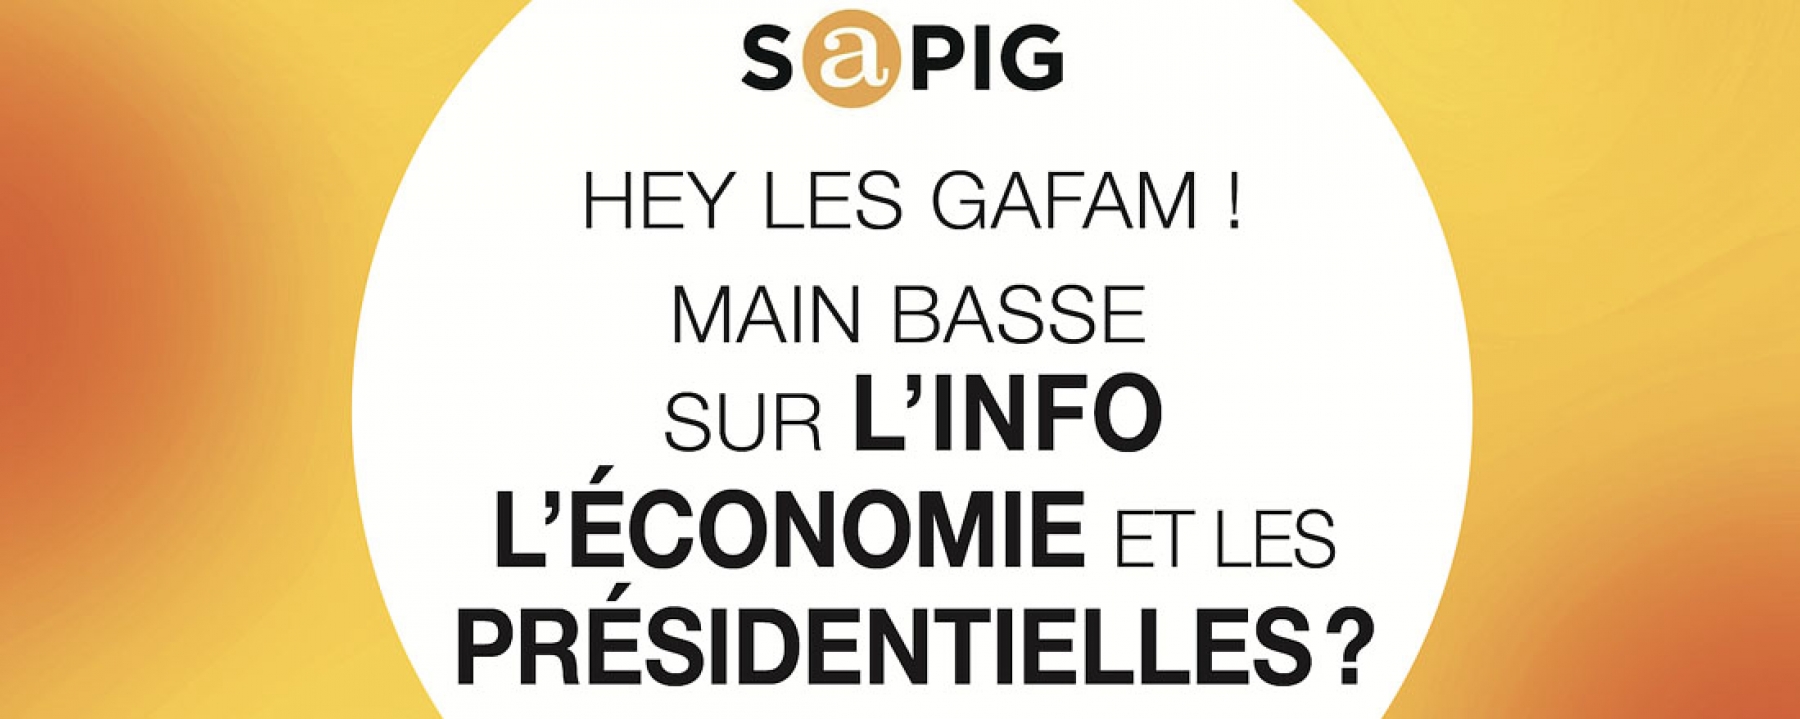 Hey les GAFAM ! Main basse sur l'info, l'économie et les présidentielles ? par SAPIG le 10 juin 2021